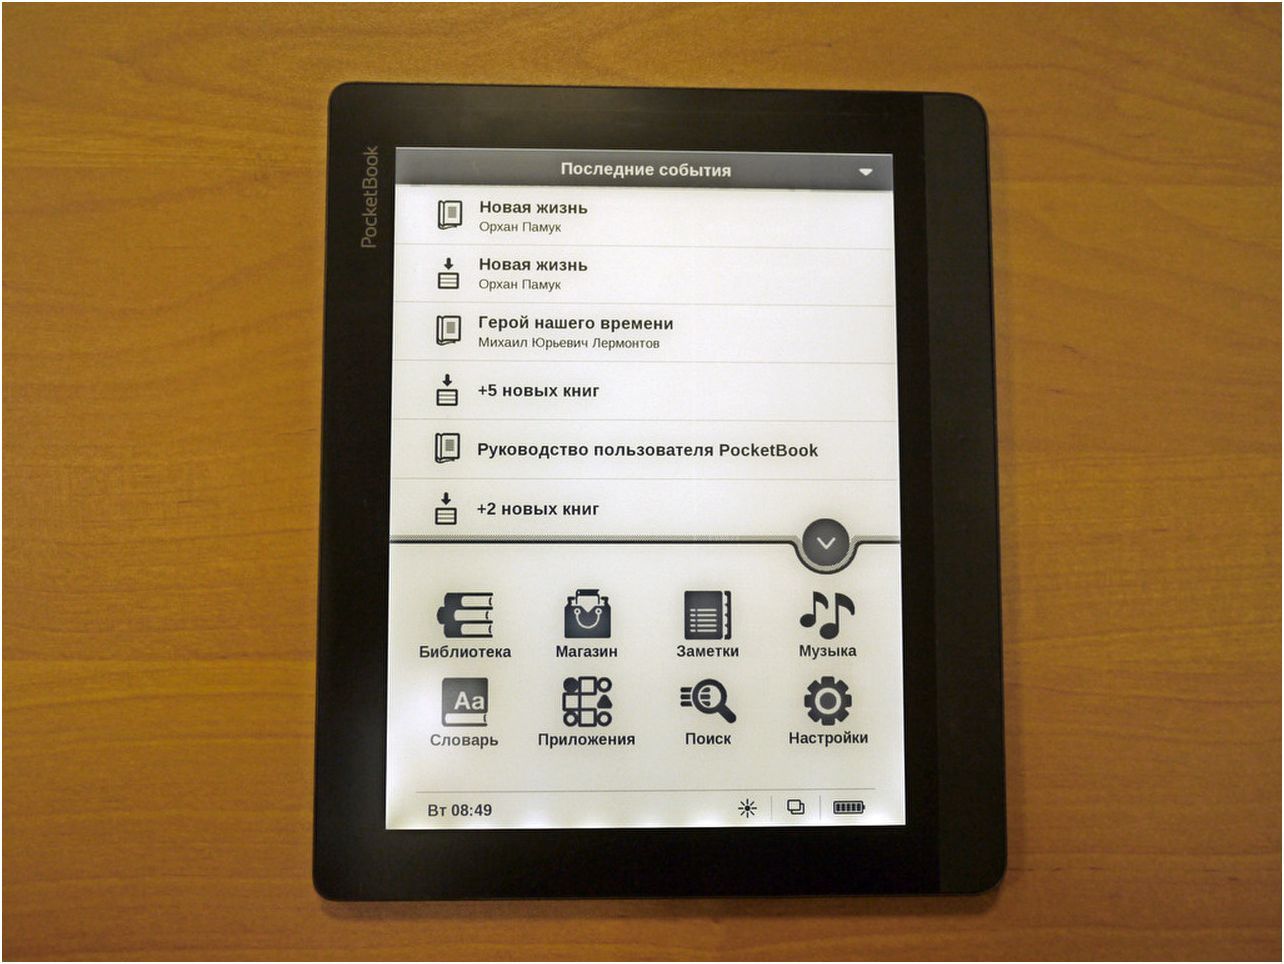 Обзор букридера PocketBook 840: пионер высокого разрешения